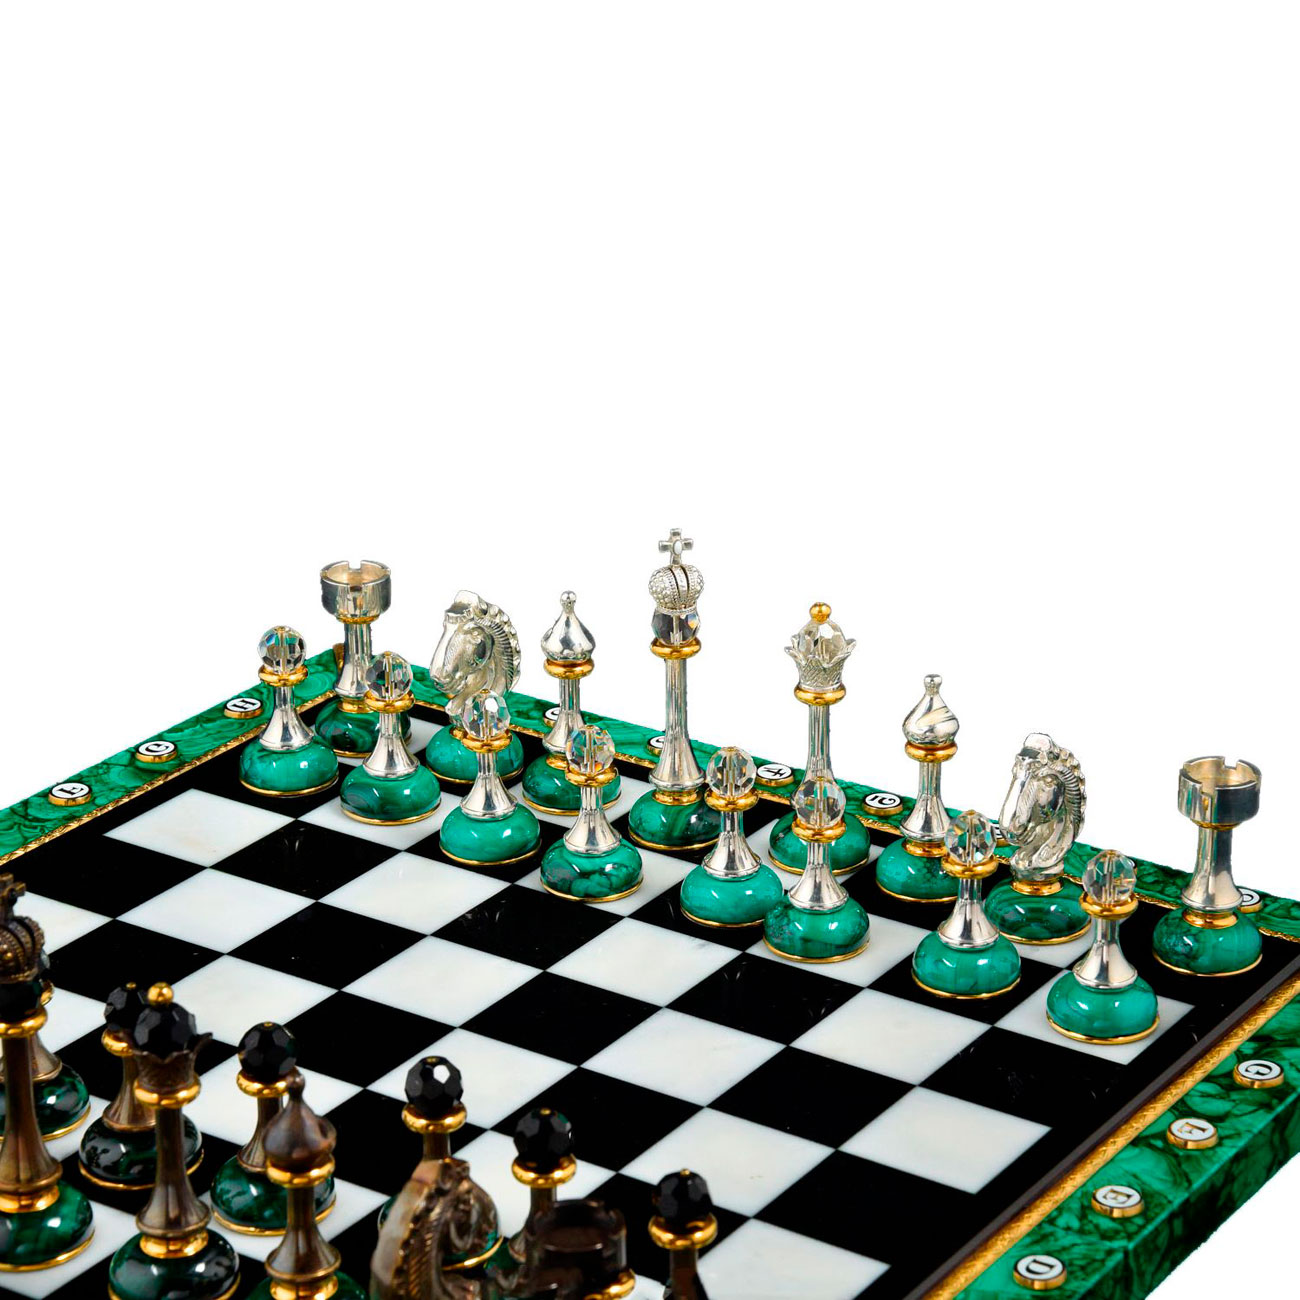 Шахматы "Малахит" - артикул: V14280 | Мосподарок 